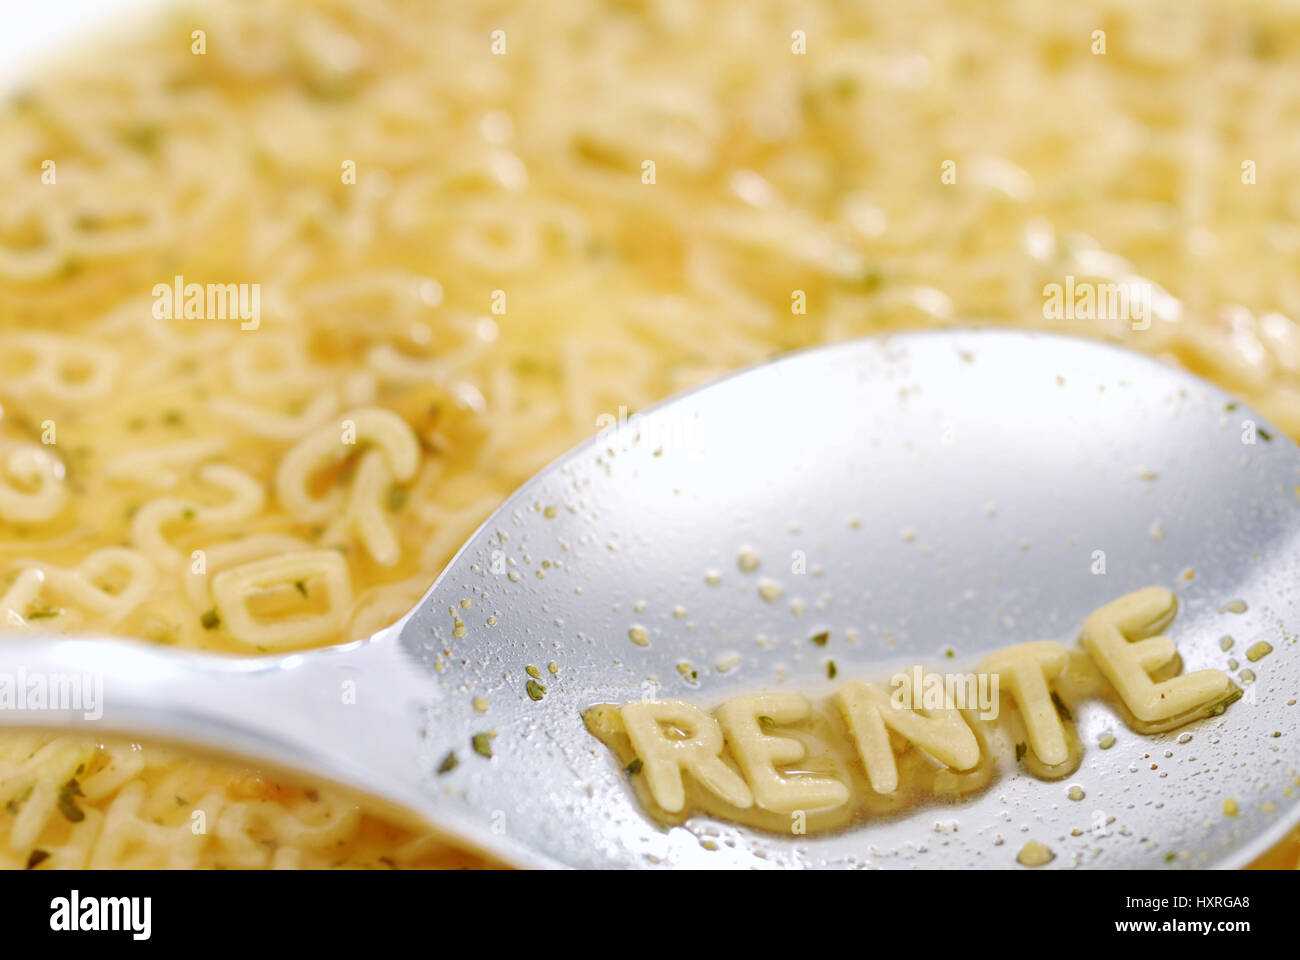 The word Pension with noodle letter on a spoon, Das Wort Rente mit Nudelbuchstaben auf einem Löffel Stock Photo